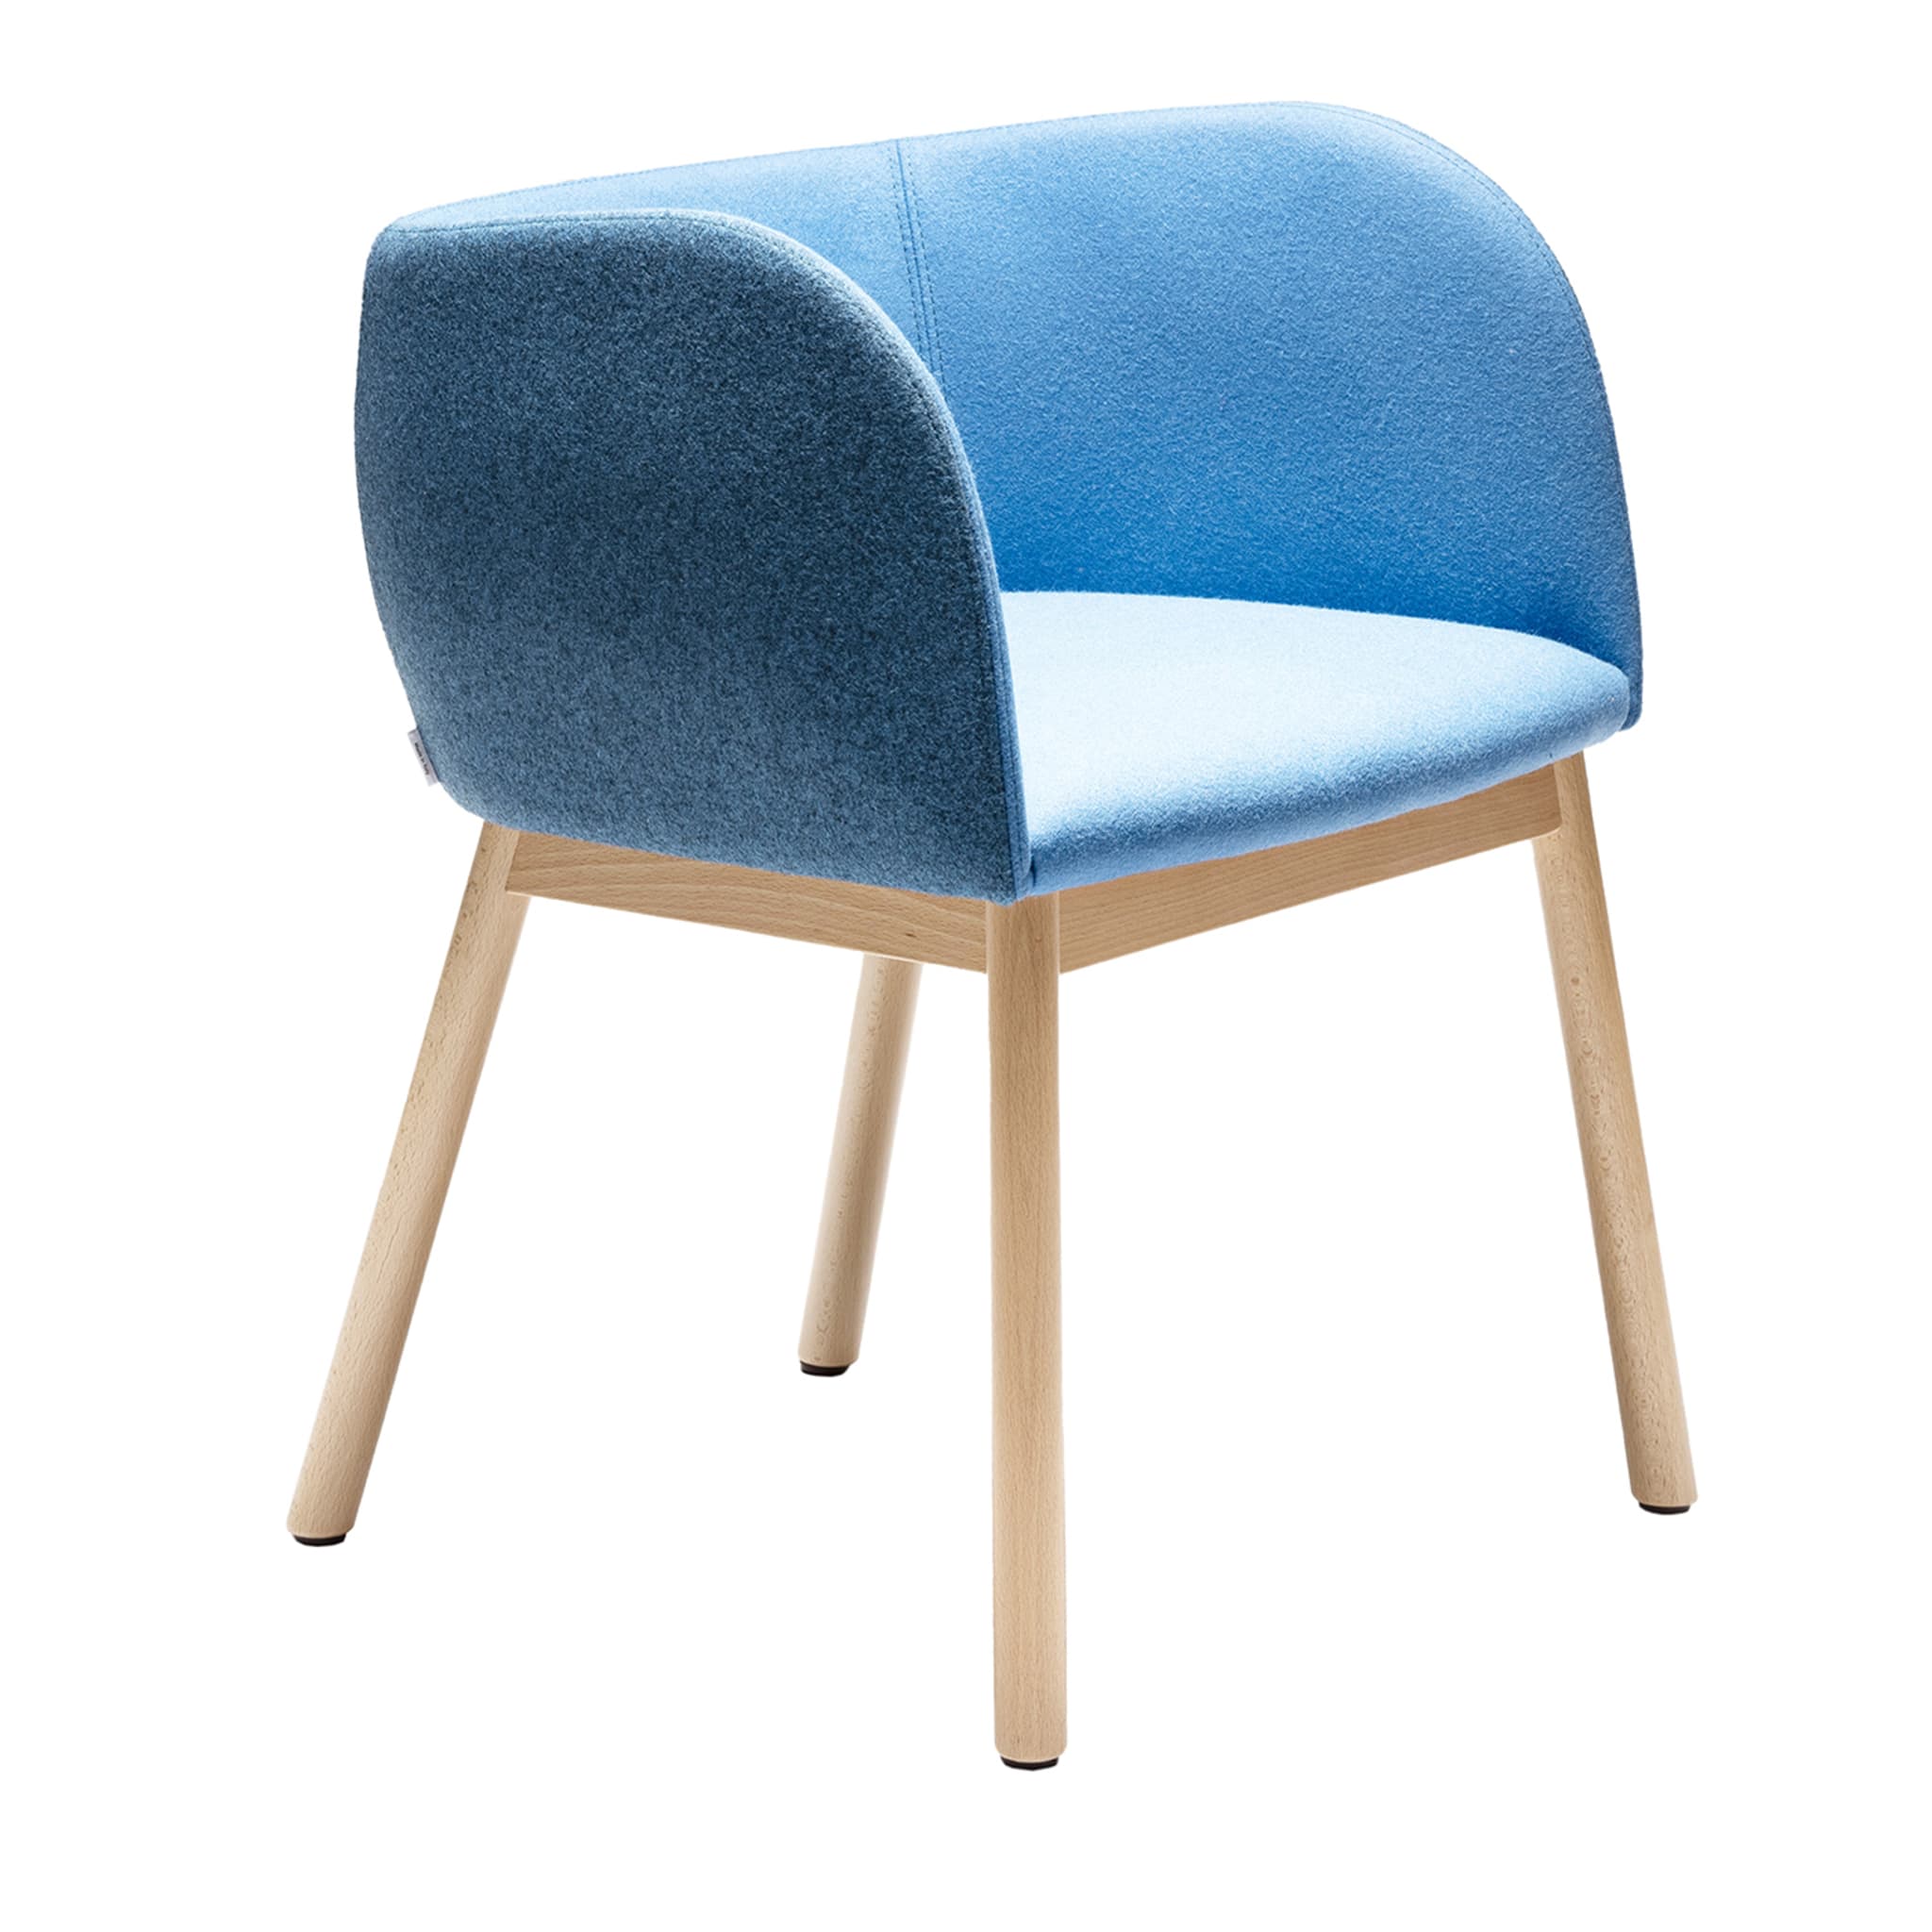 Mousse SP Blauer Stuhl von Tommaso Caldera - Hauptansicht